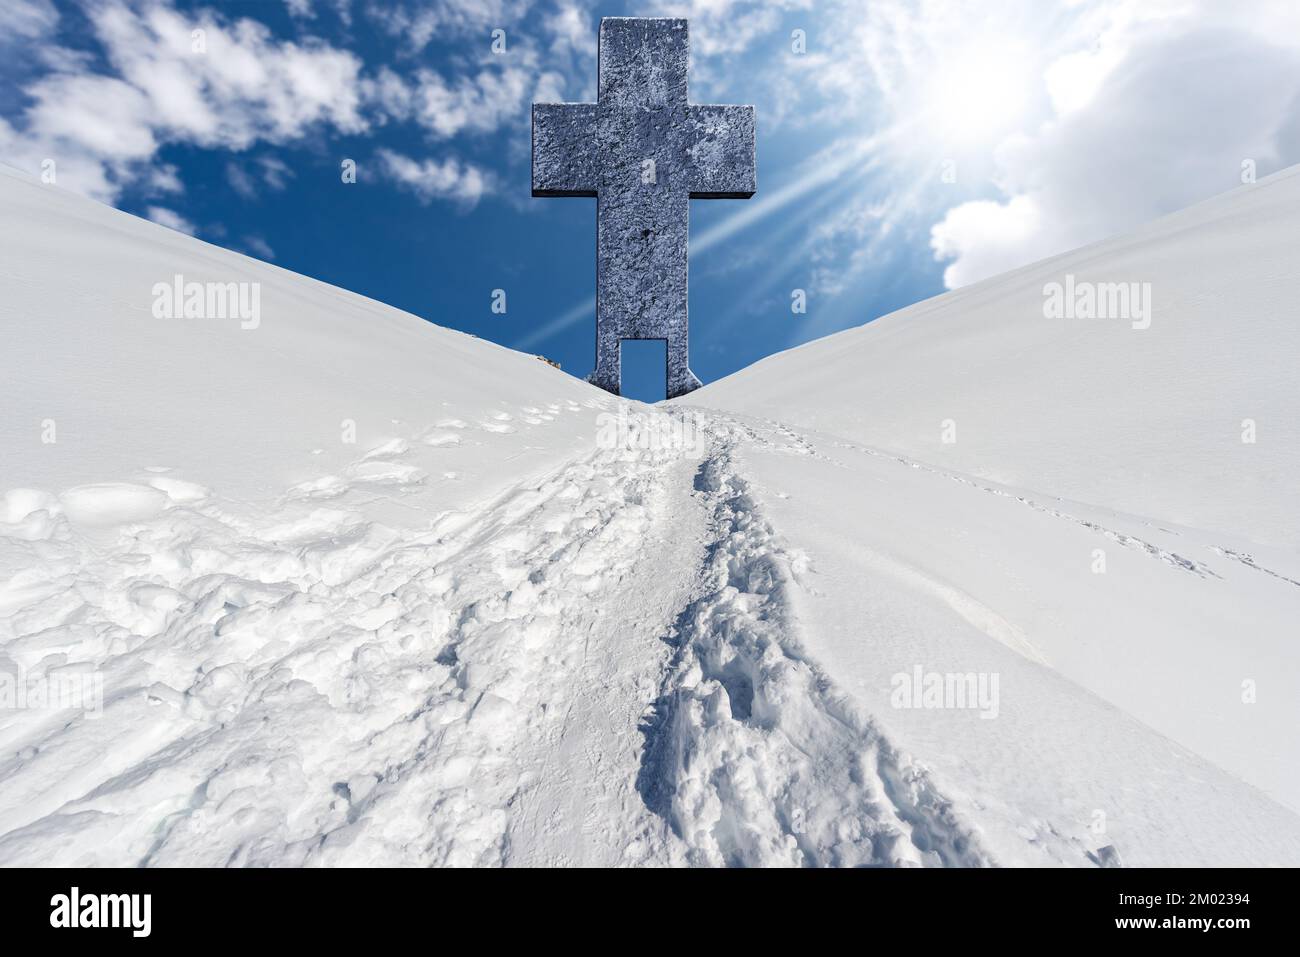 Gran cruz religiosa de piedra con una puerta y un sendero con huellas en la nieve en un paisaje de montaña contra un cielo azul con nubes y rayos de sol. Foto de stock